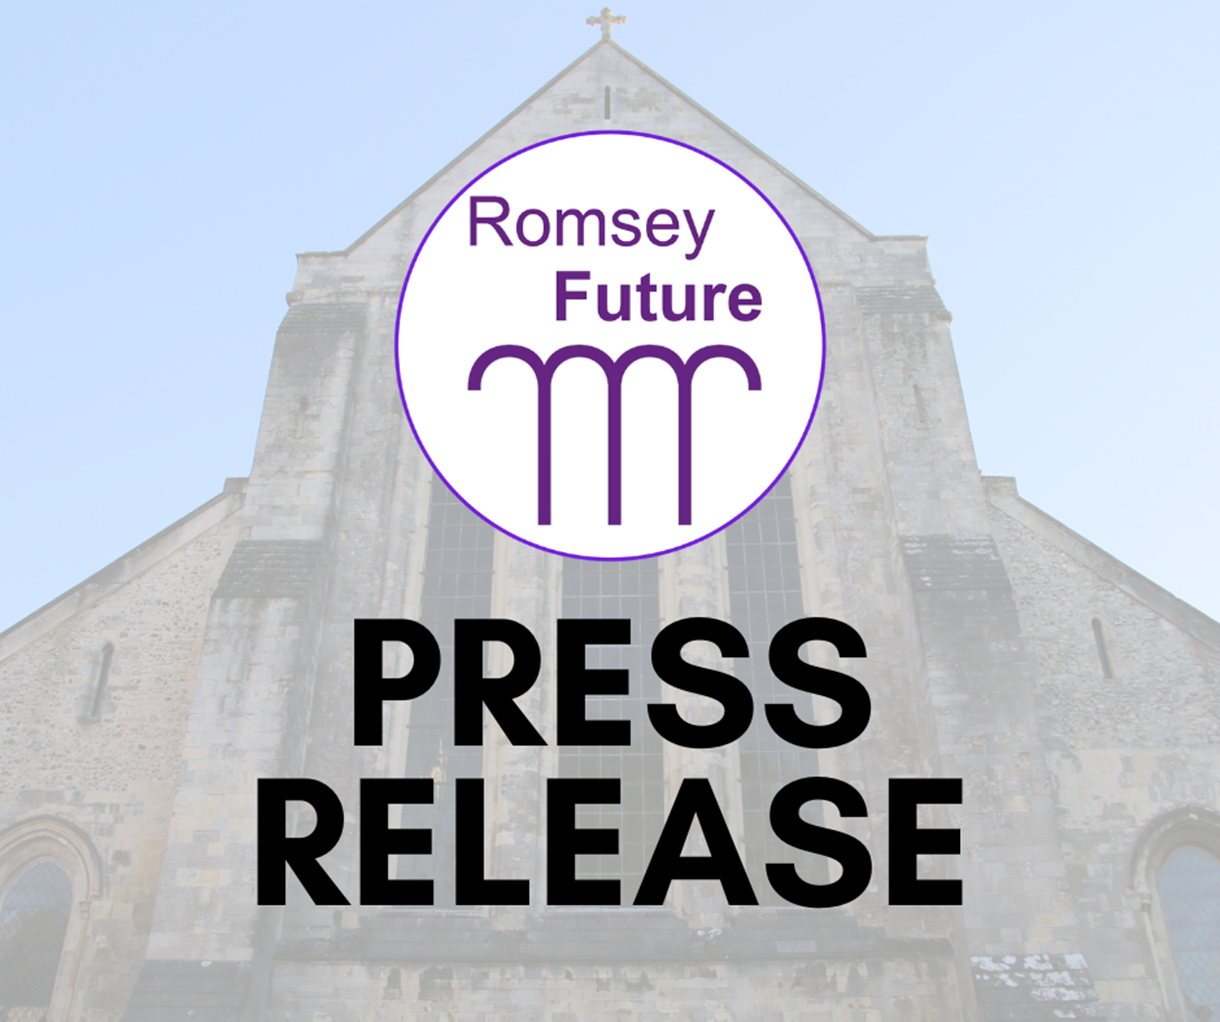 Romsey Future Press Release